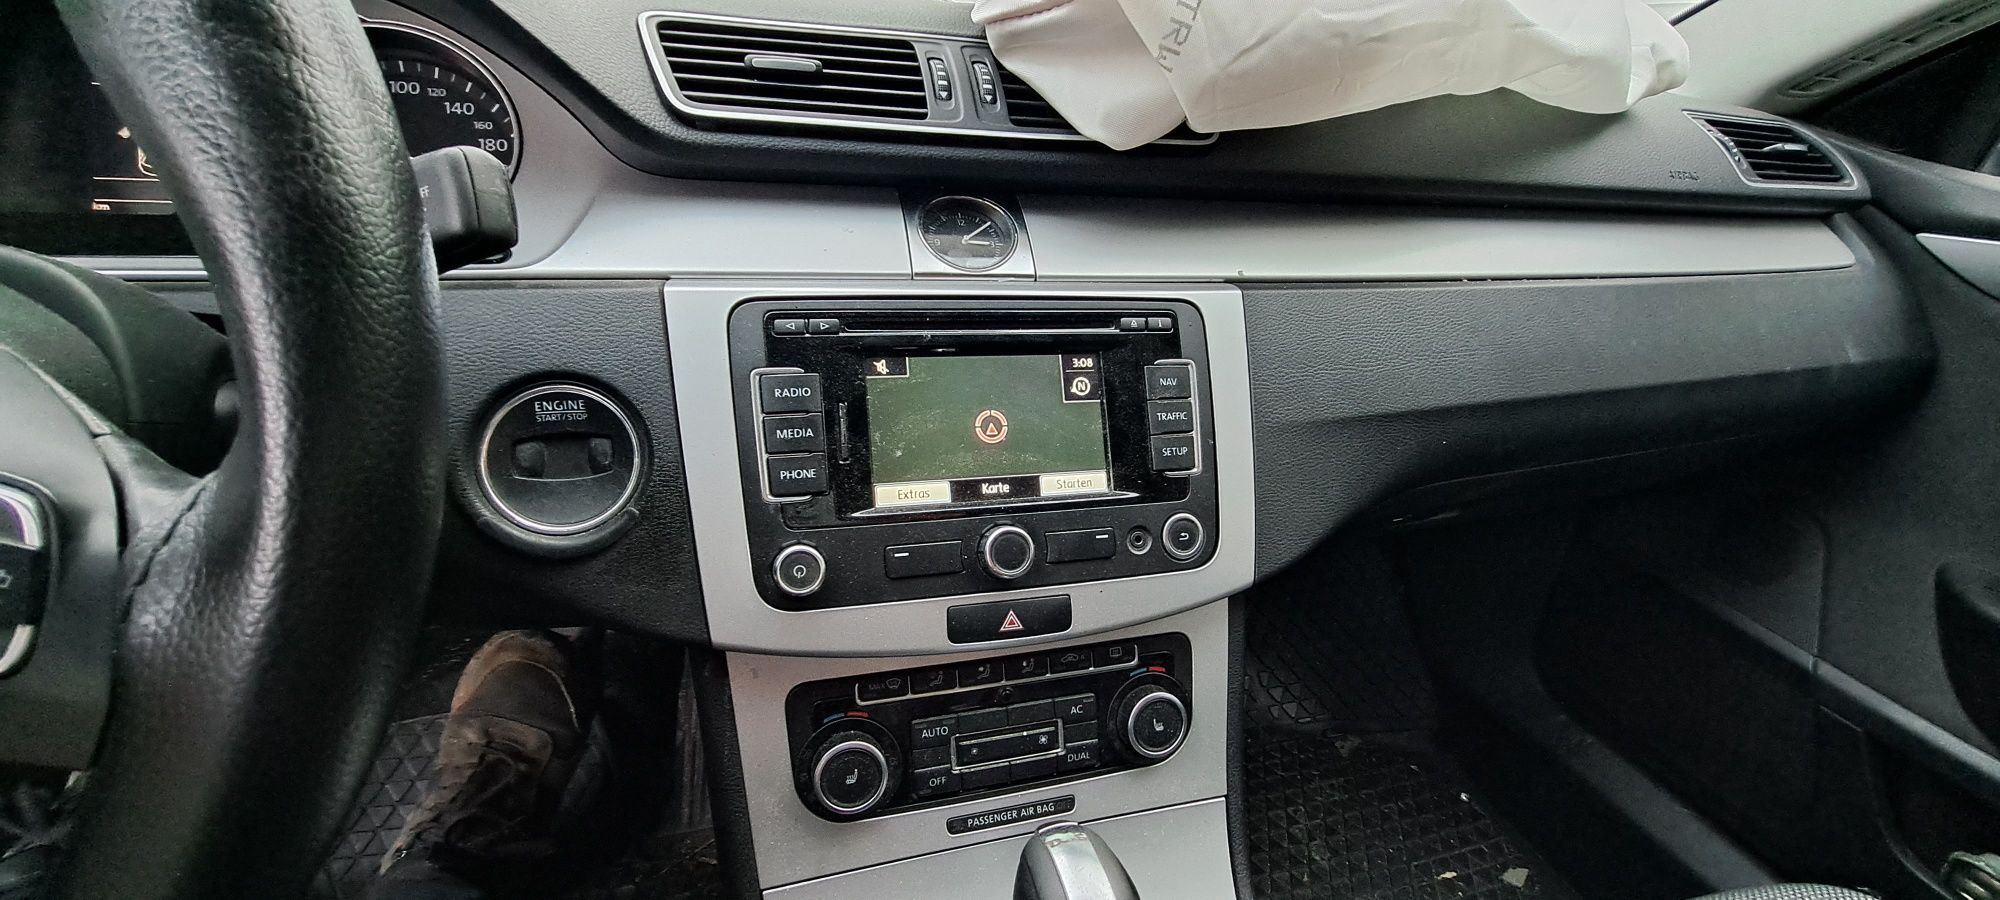 Vând navigație originala VW RNS 310 cu cod